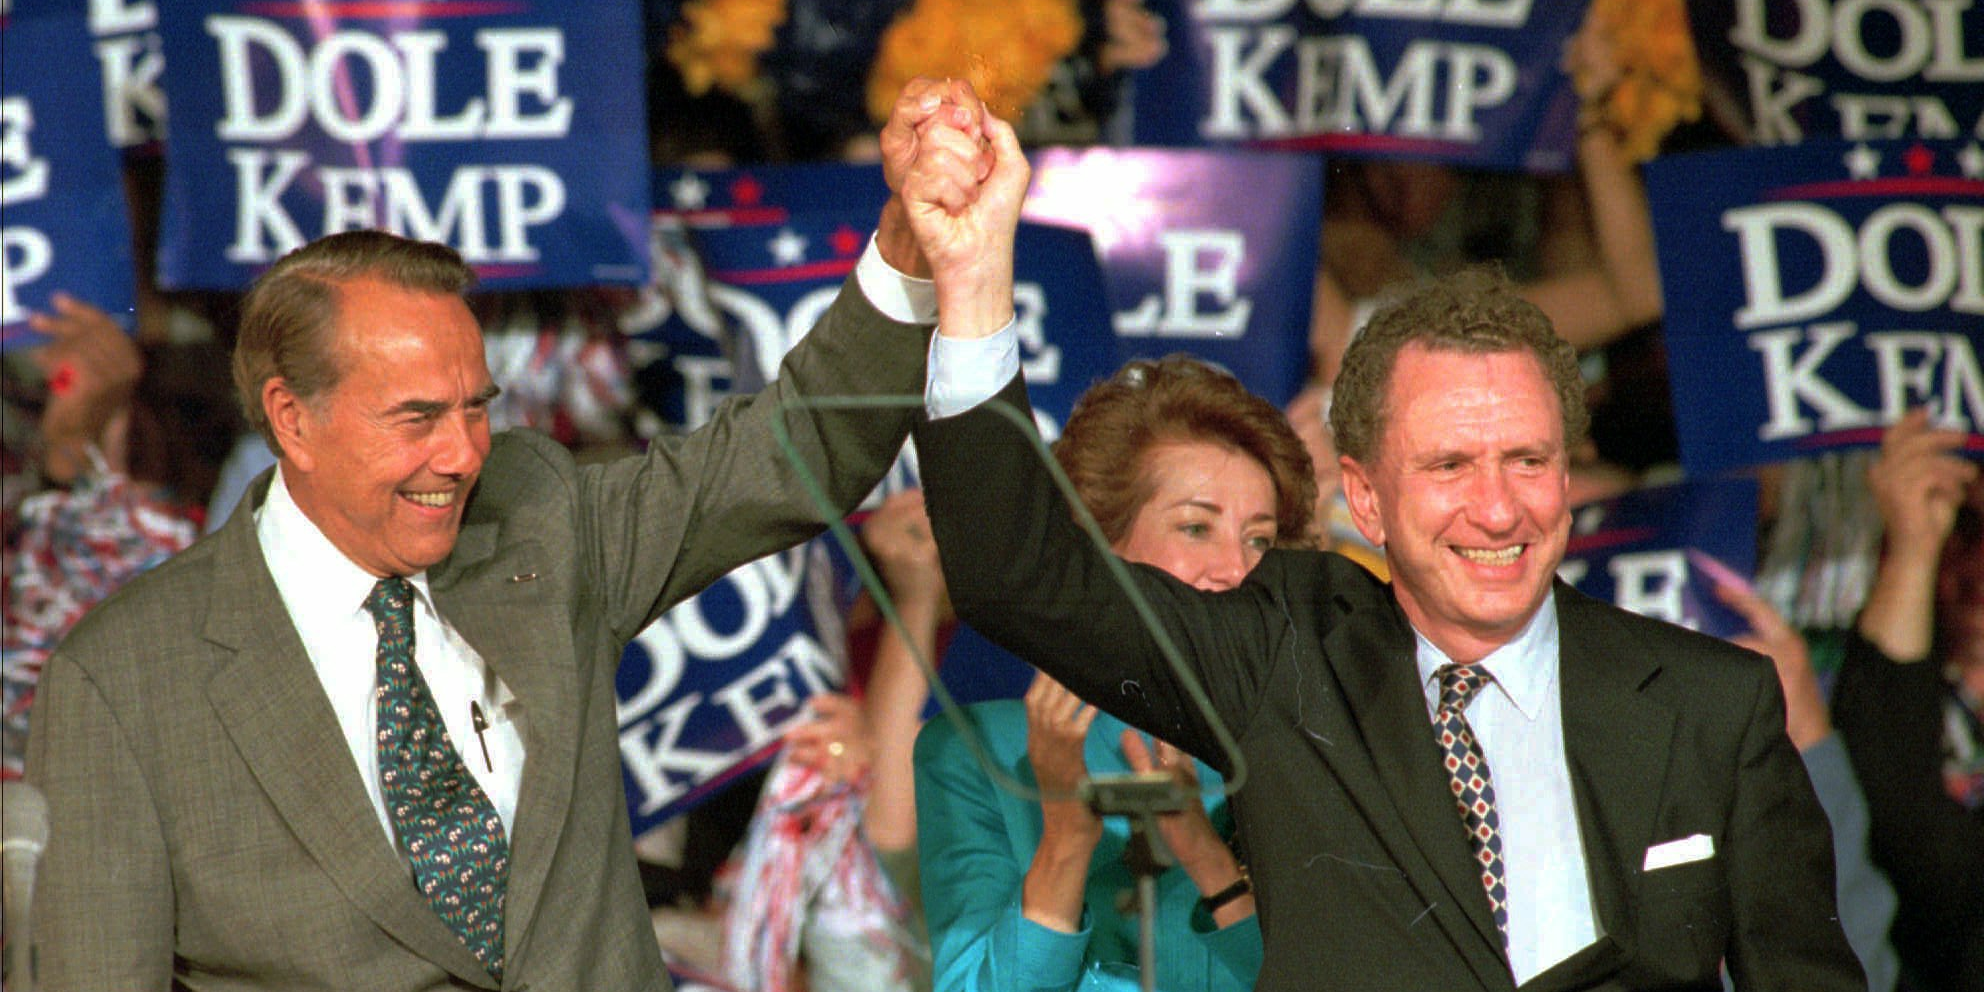 Bob Dole 1996 presidential campaign